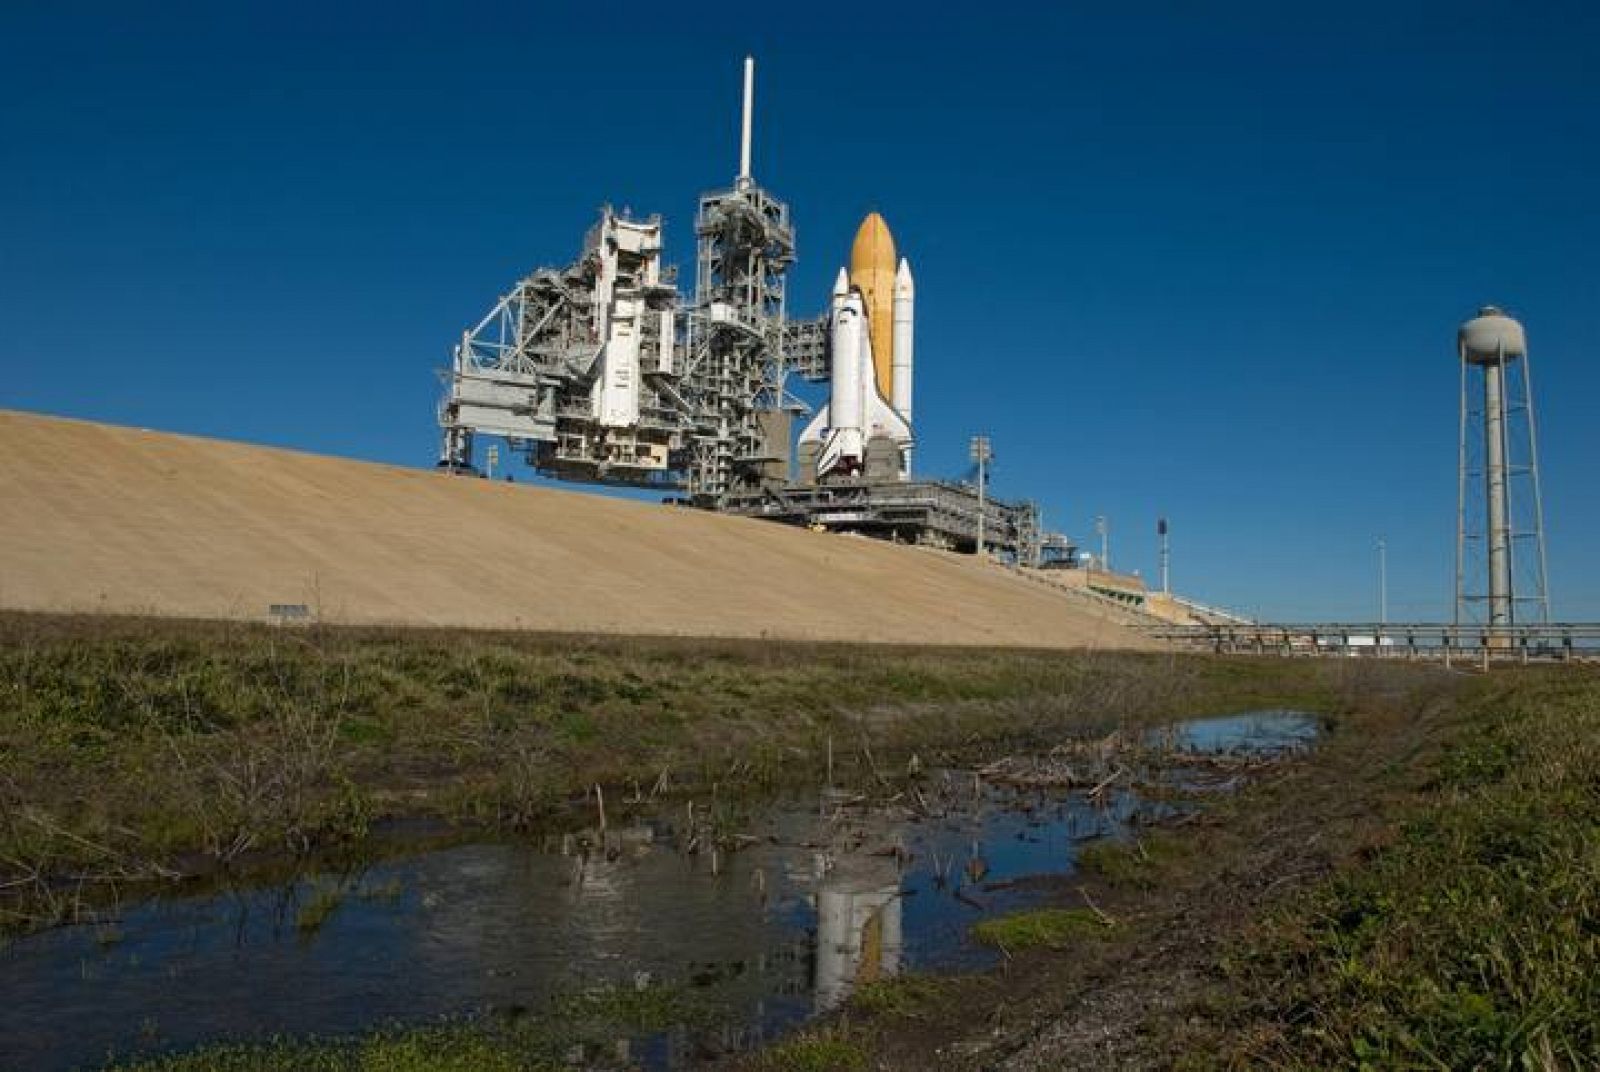  El transbordador Endeavour en las instalaciones del Centro Espacial Kennedy en Cabo Cañaveral, Florida